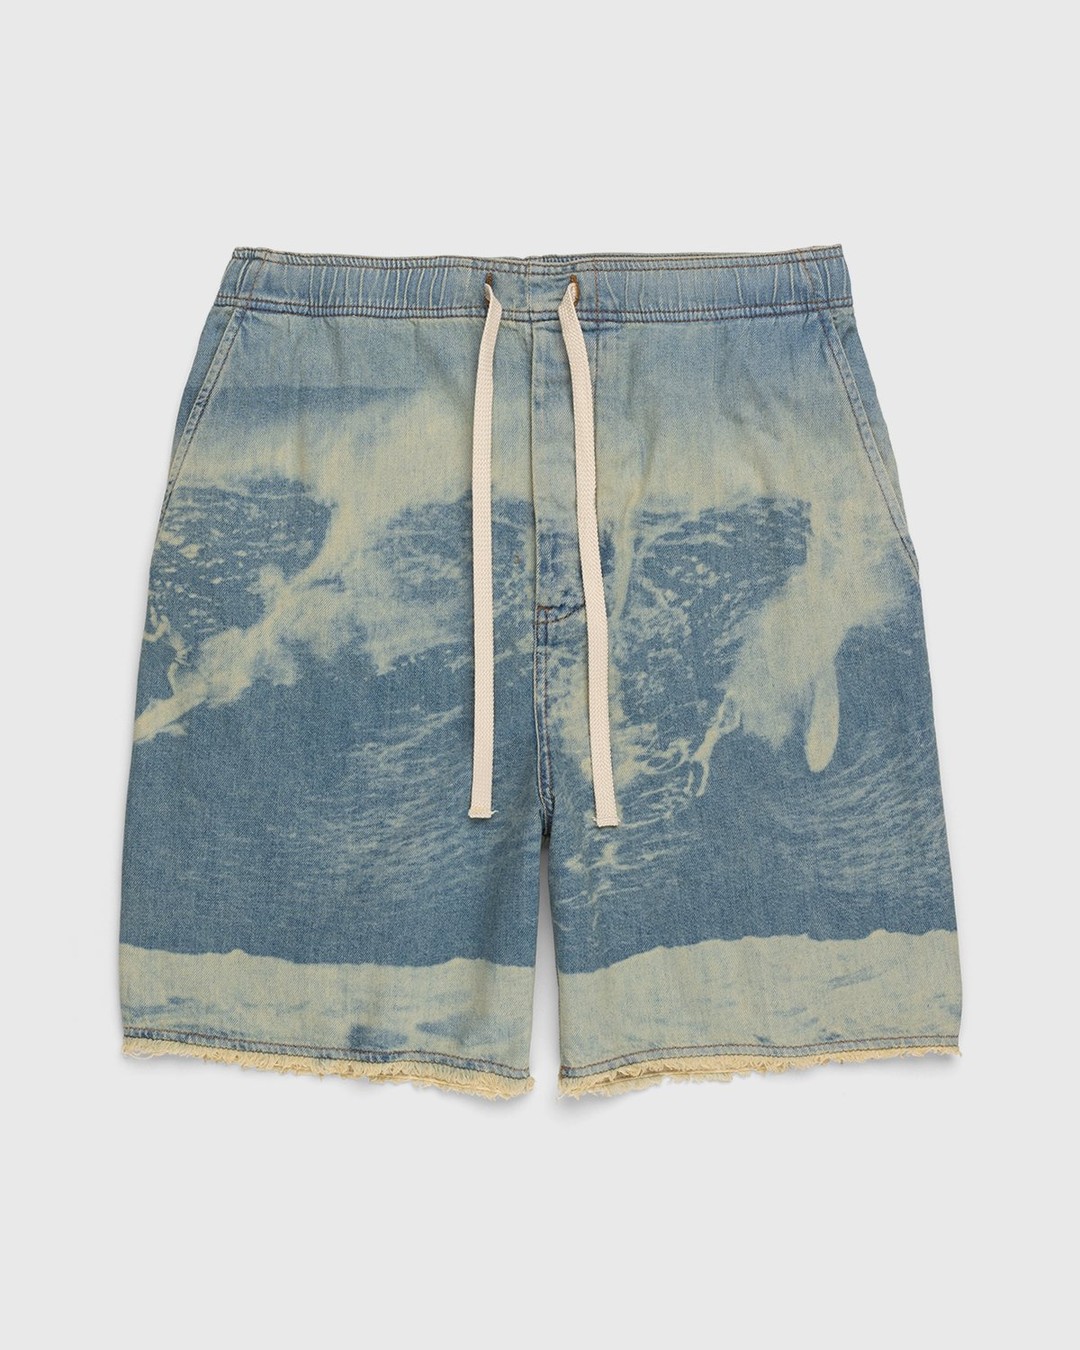 Loewe – Paula's Ibiza Surf Drawstring Denim Shorts Blue - Shorts - Blue - Image 1